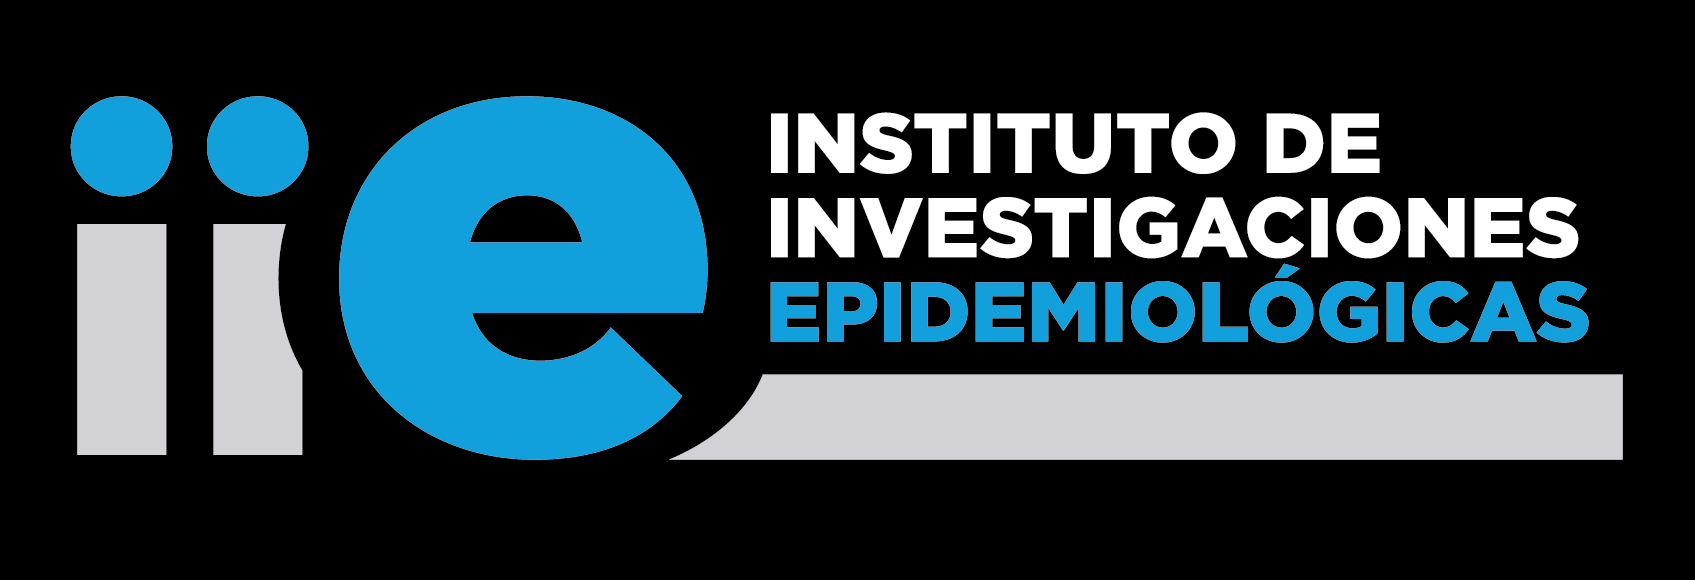 Instituto de Investigaciones Epidemiolgicas